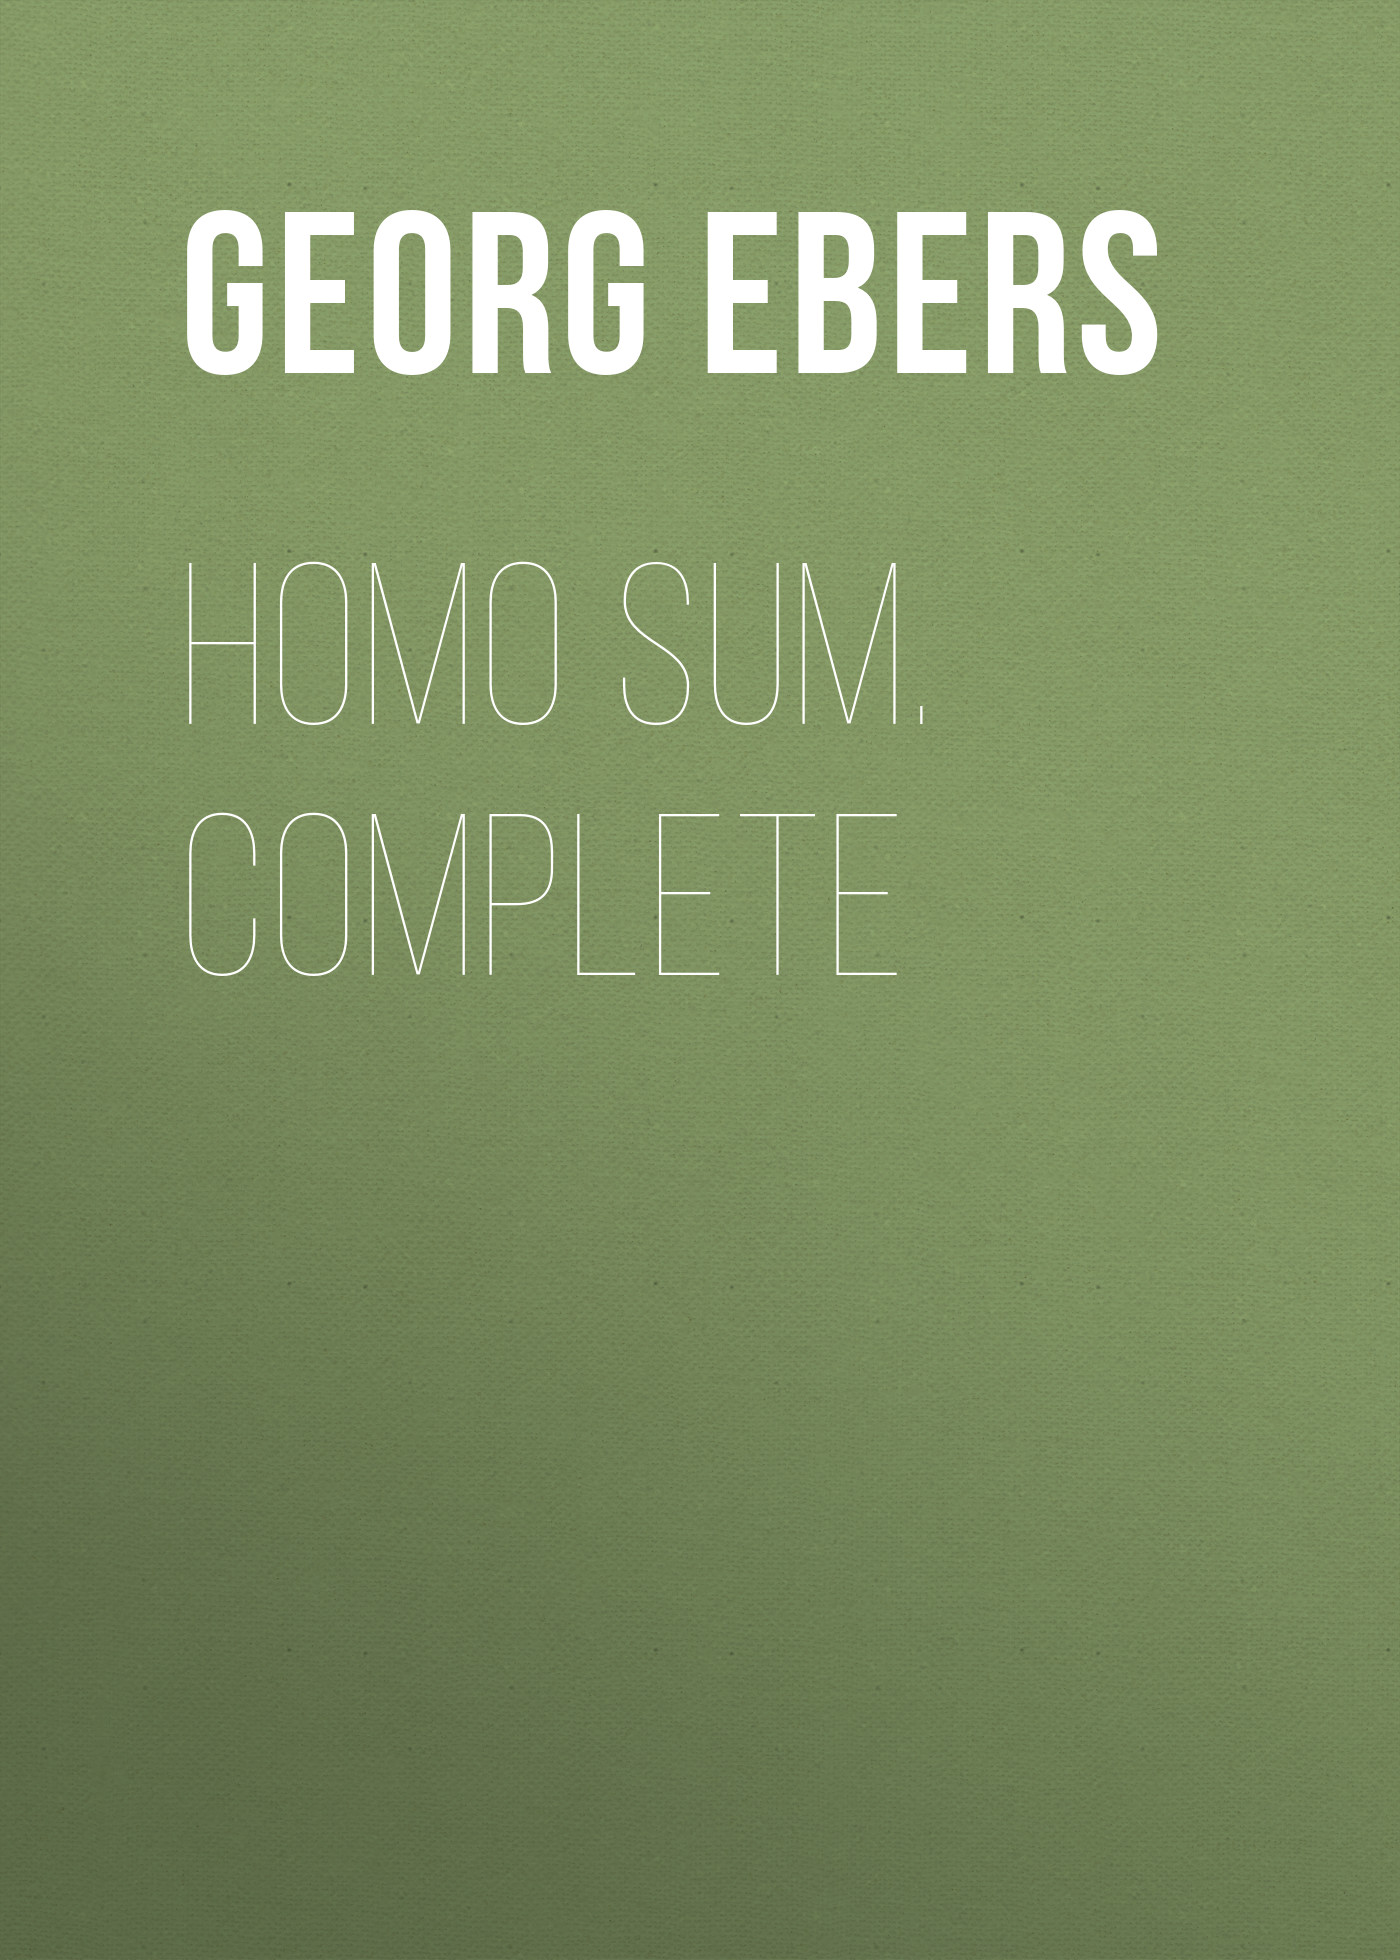 Книга Homo Sum. Complete из серии , созданная Georg Ebers, может относится к жанру Зарубежная классика, Зарубежная старинная литература. Стоимость электронной книги Homo Sum. Complete с идентификатором 42627691 составляет 0 руб.